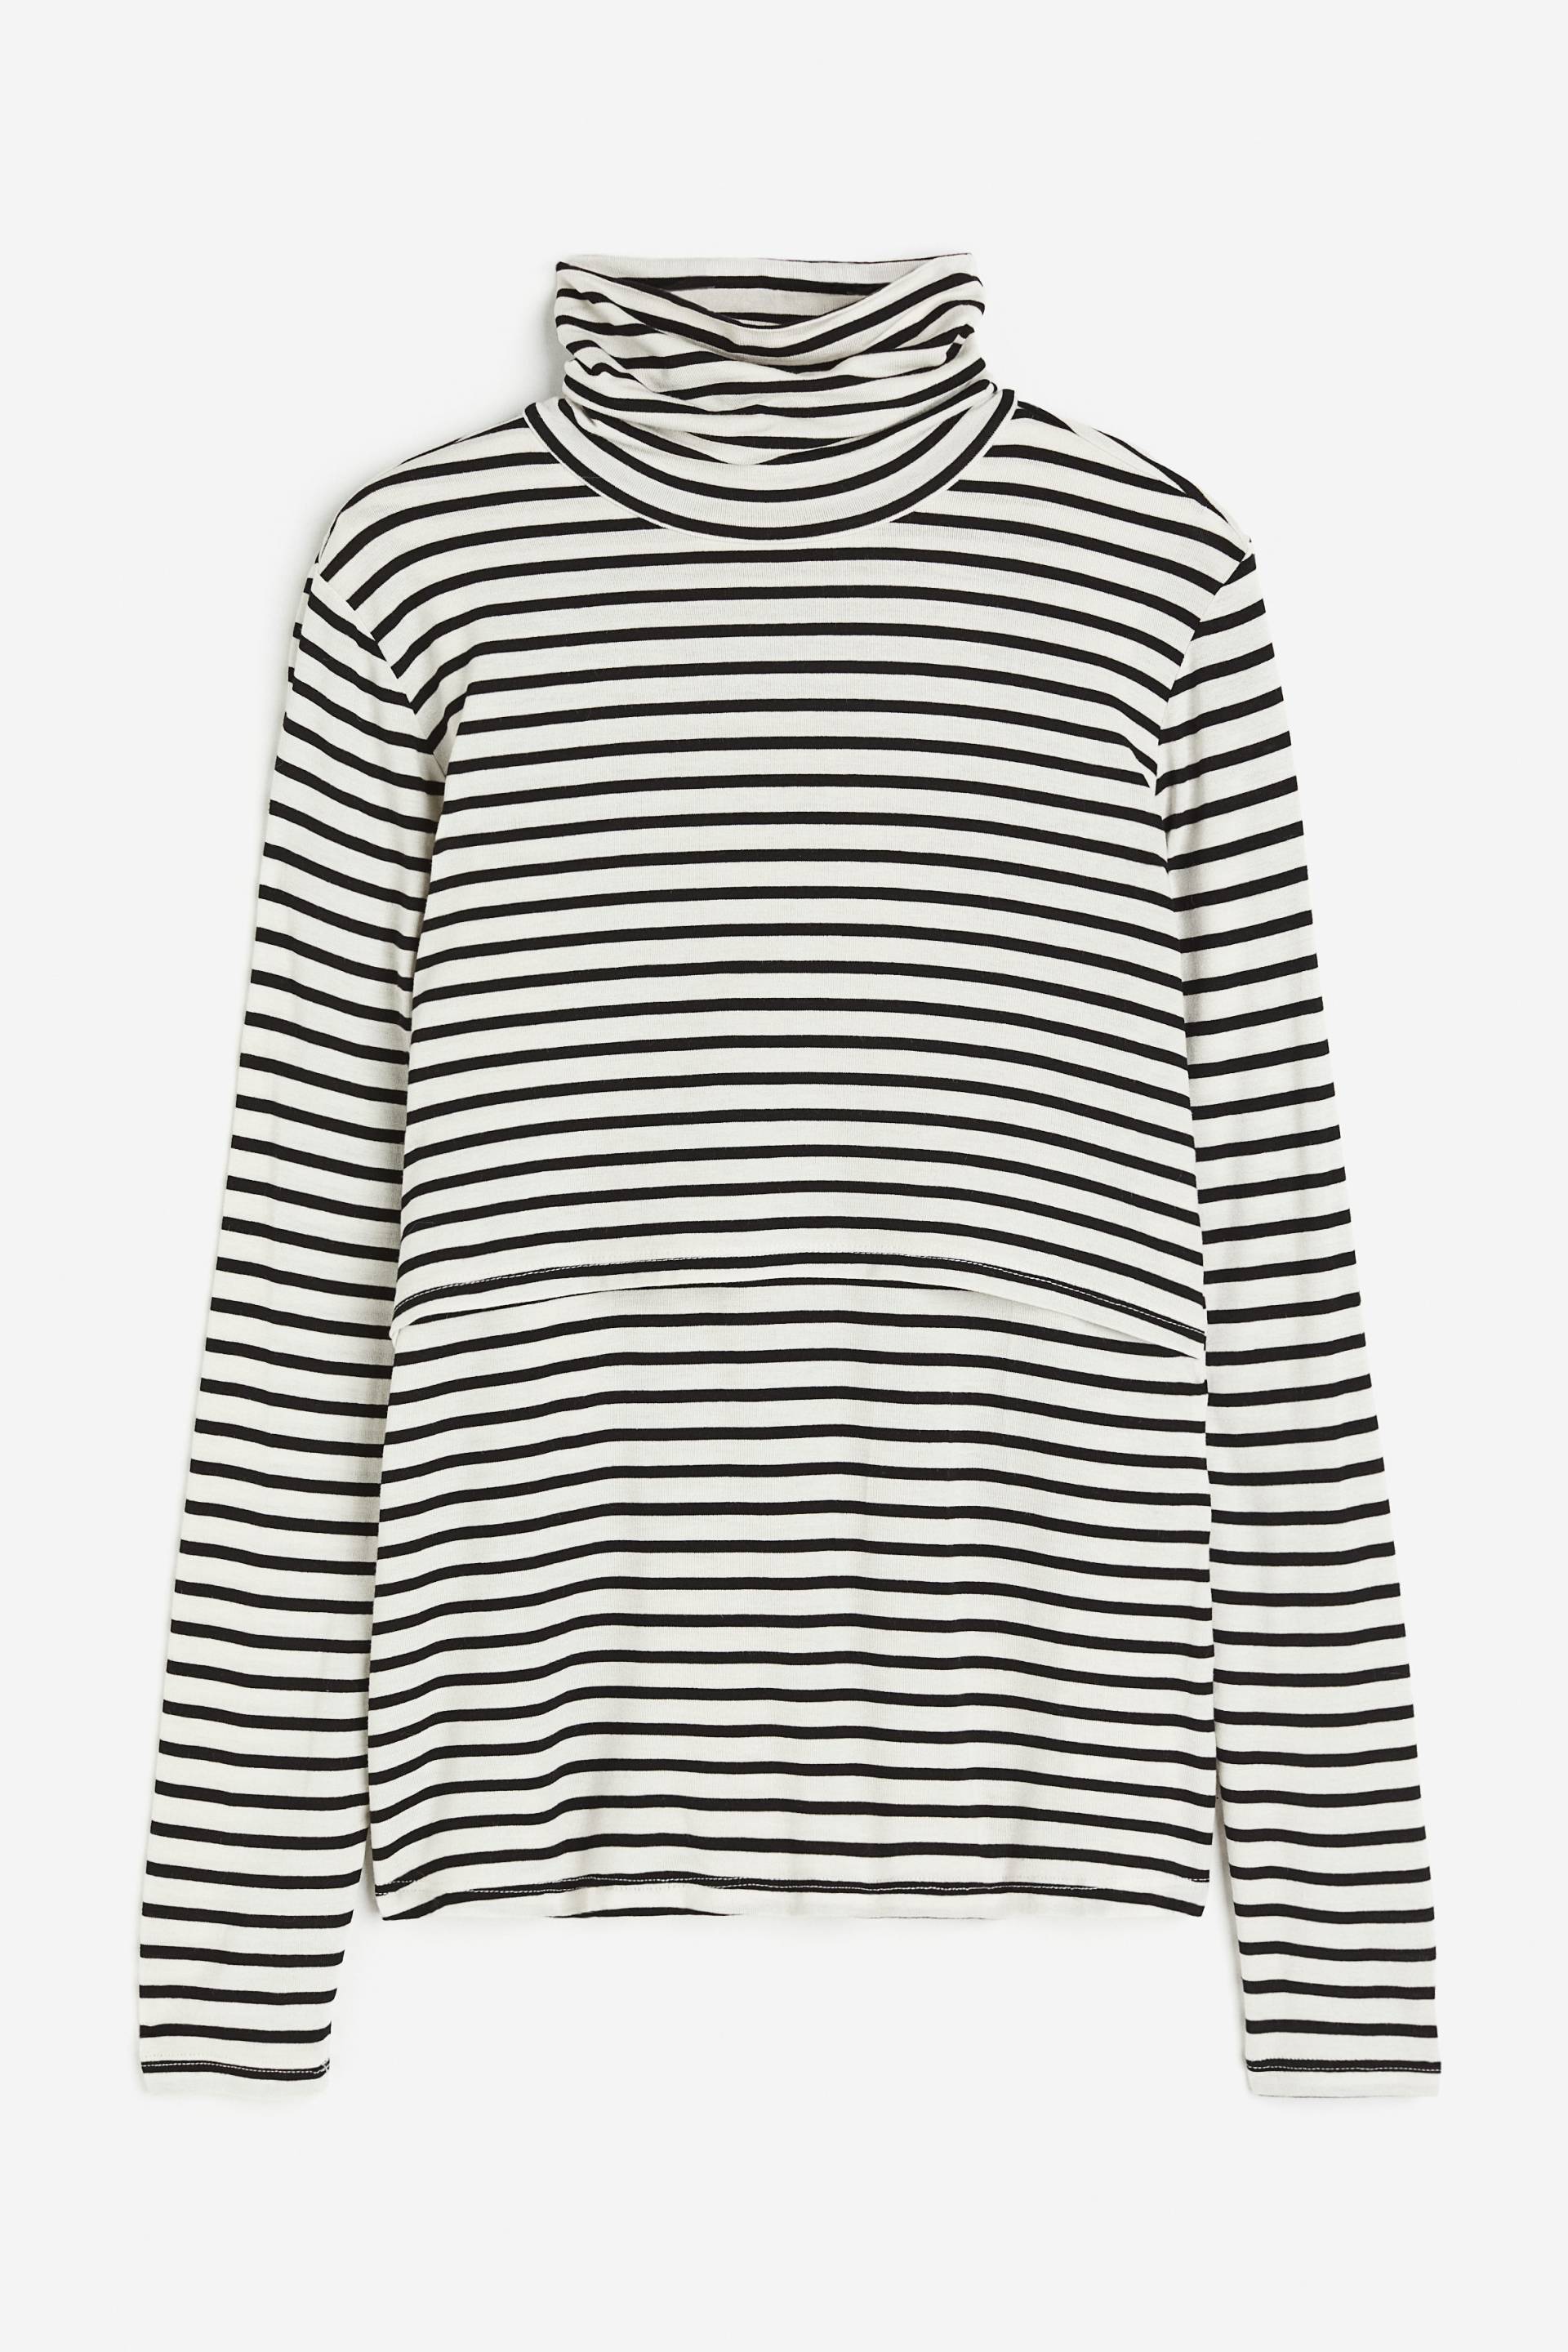 H&M MAMA Before & After Stillshirt Weiß/Schwarz gestreift, Tops in Größe XXL. Farbe: White/black striped von H&M